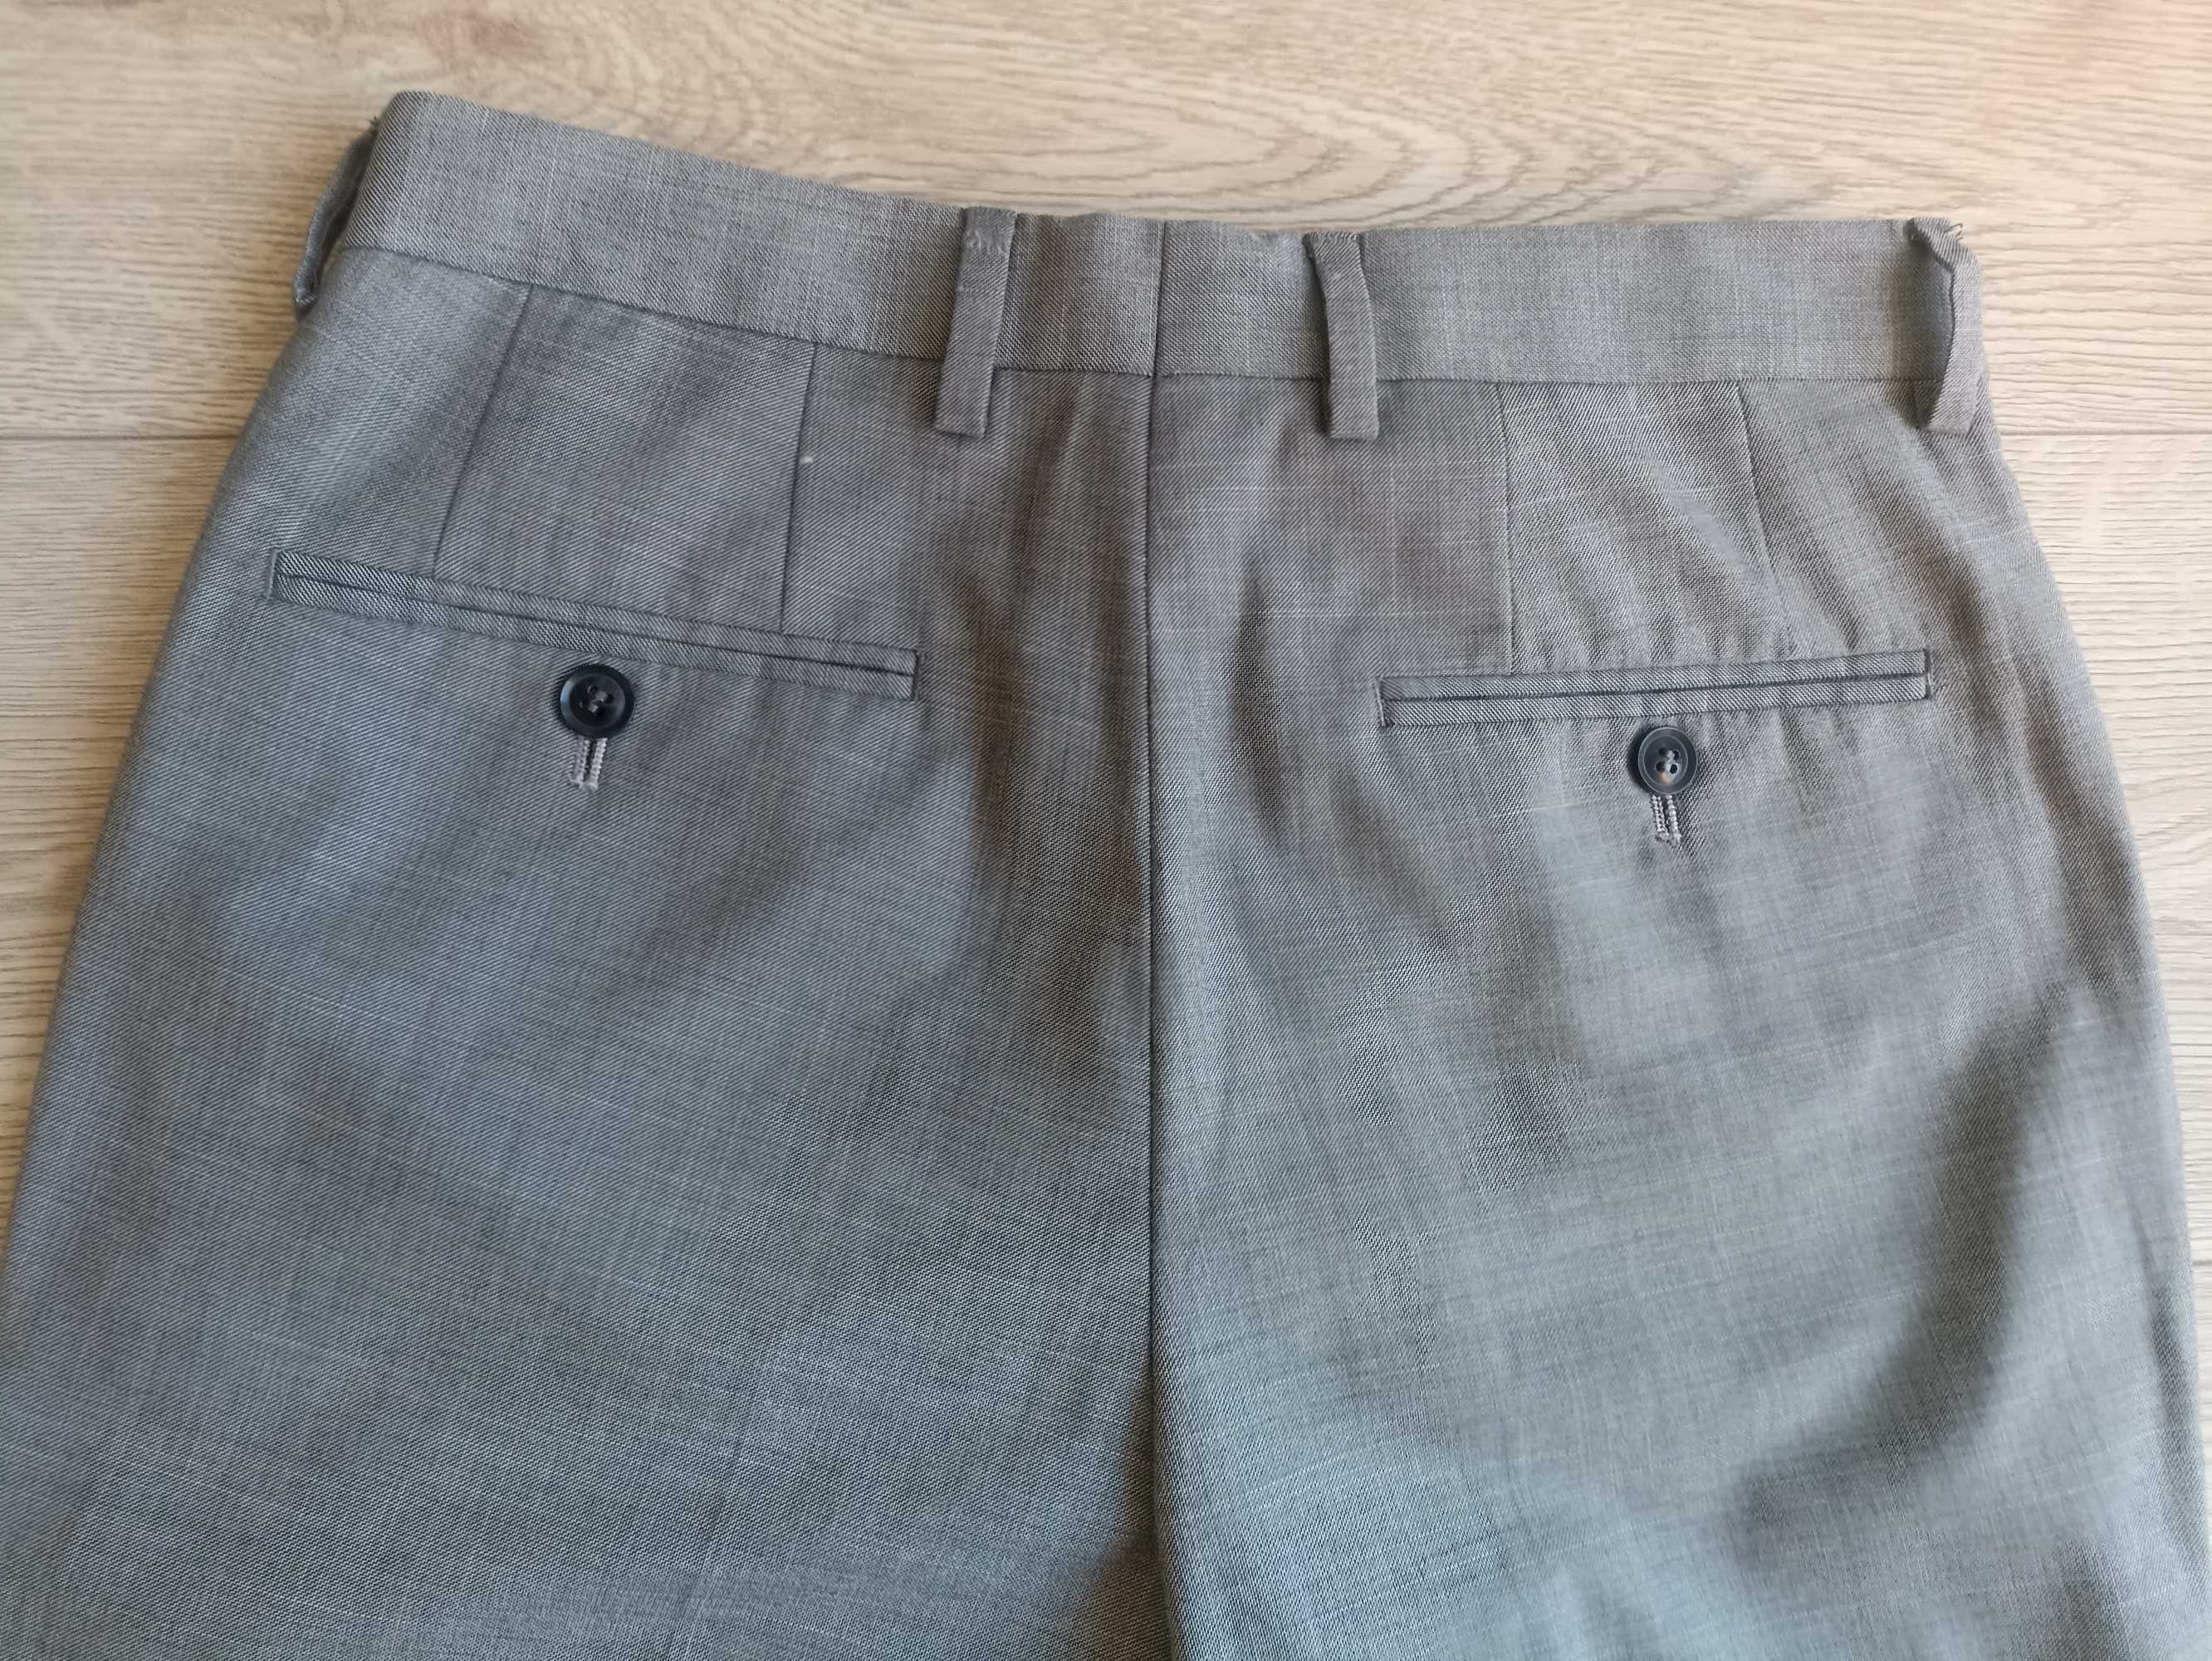 Męskie spodnie, Topman, rozmiar 28R, nowe bez metki